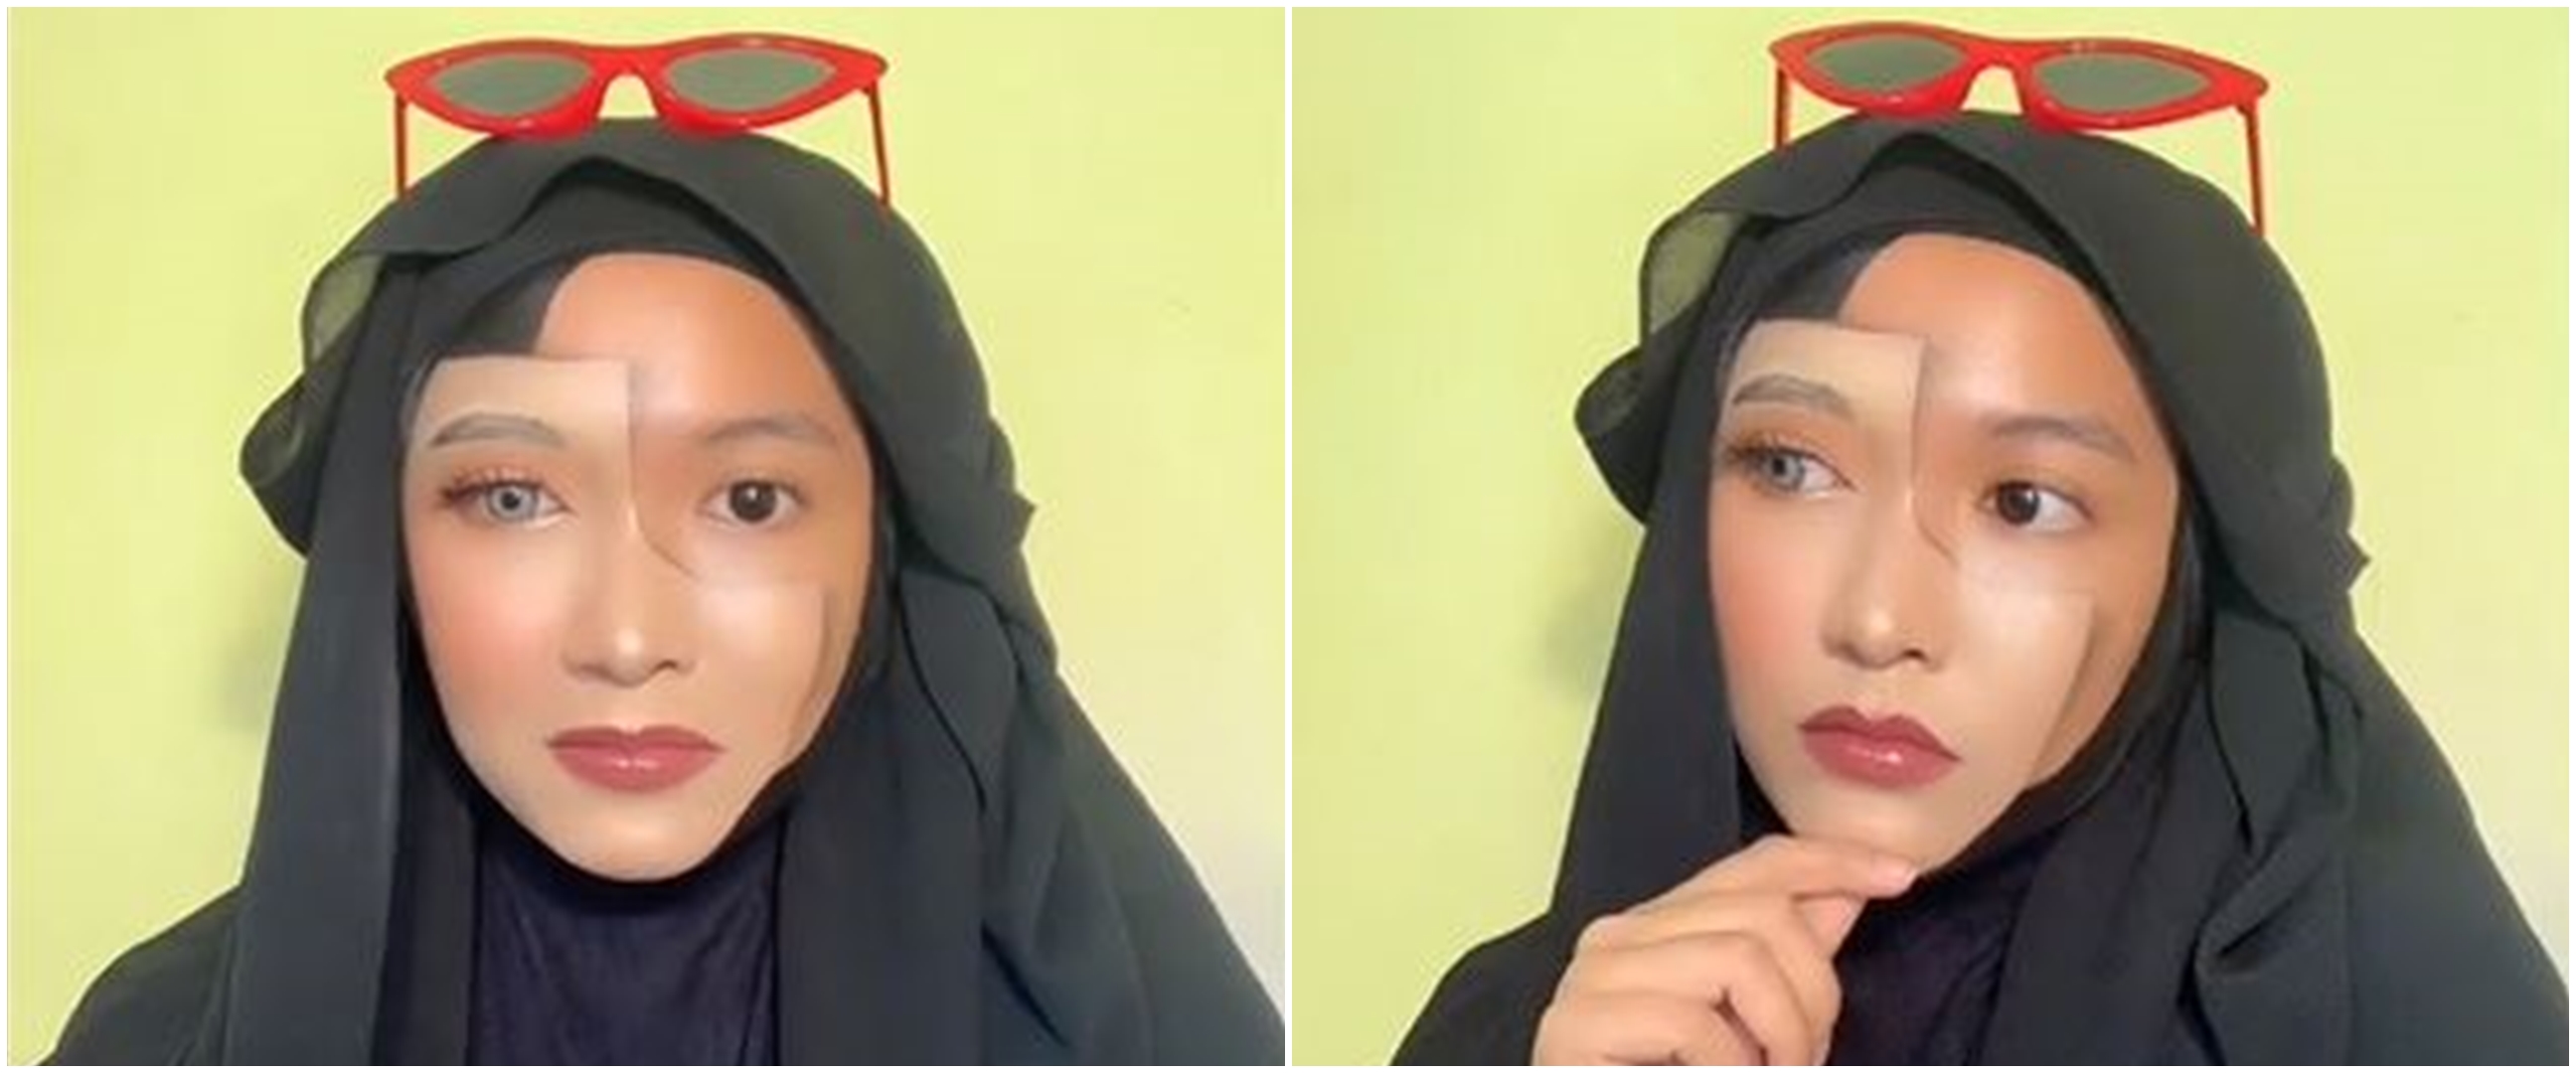 Ikut illusion challenge, hasil makeup wanita ini bikin bengong